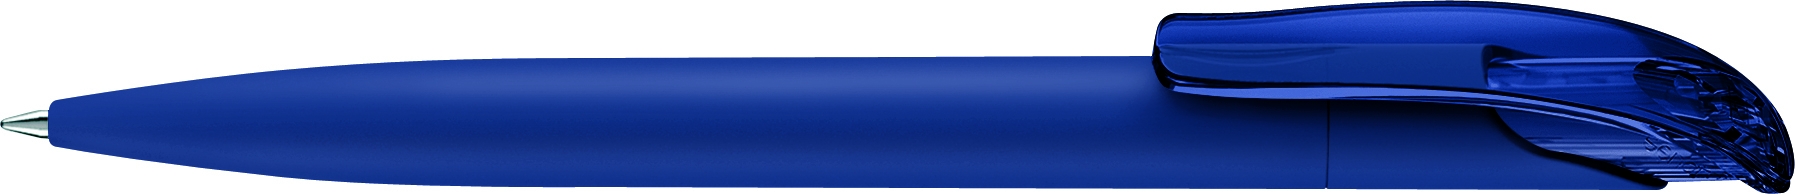  2737 ШР Challenger Soft Touch clip clear т.синий 2757, синий, пластик